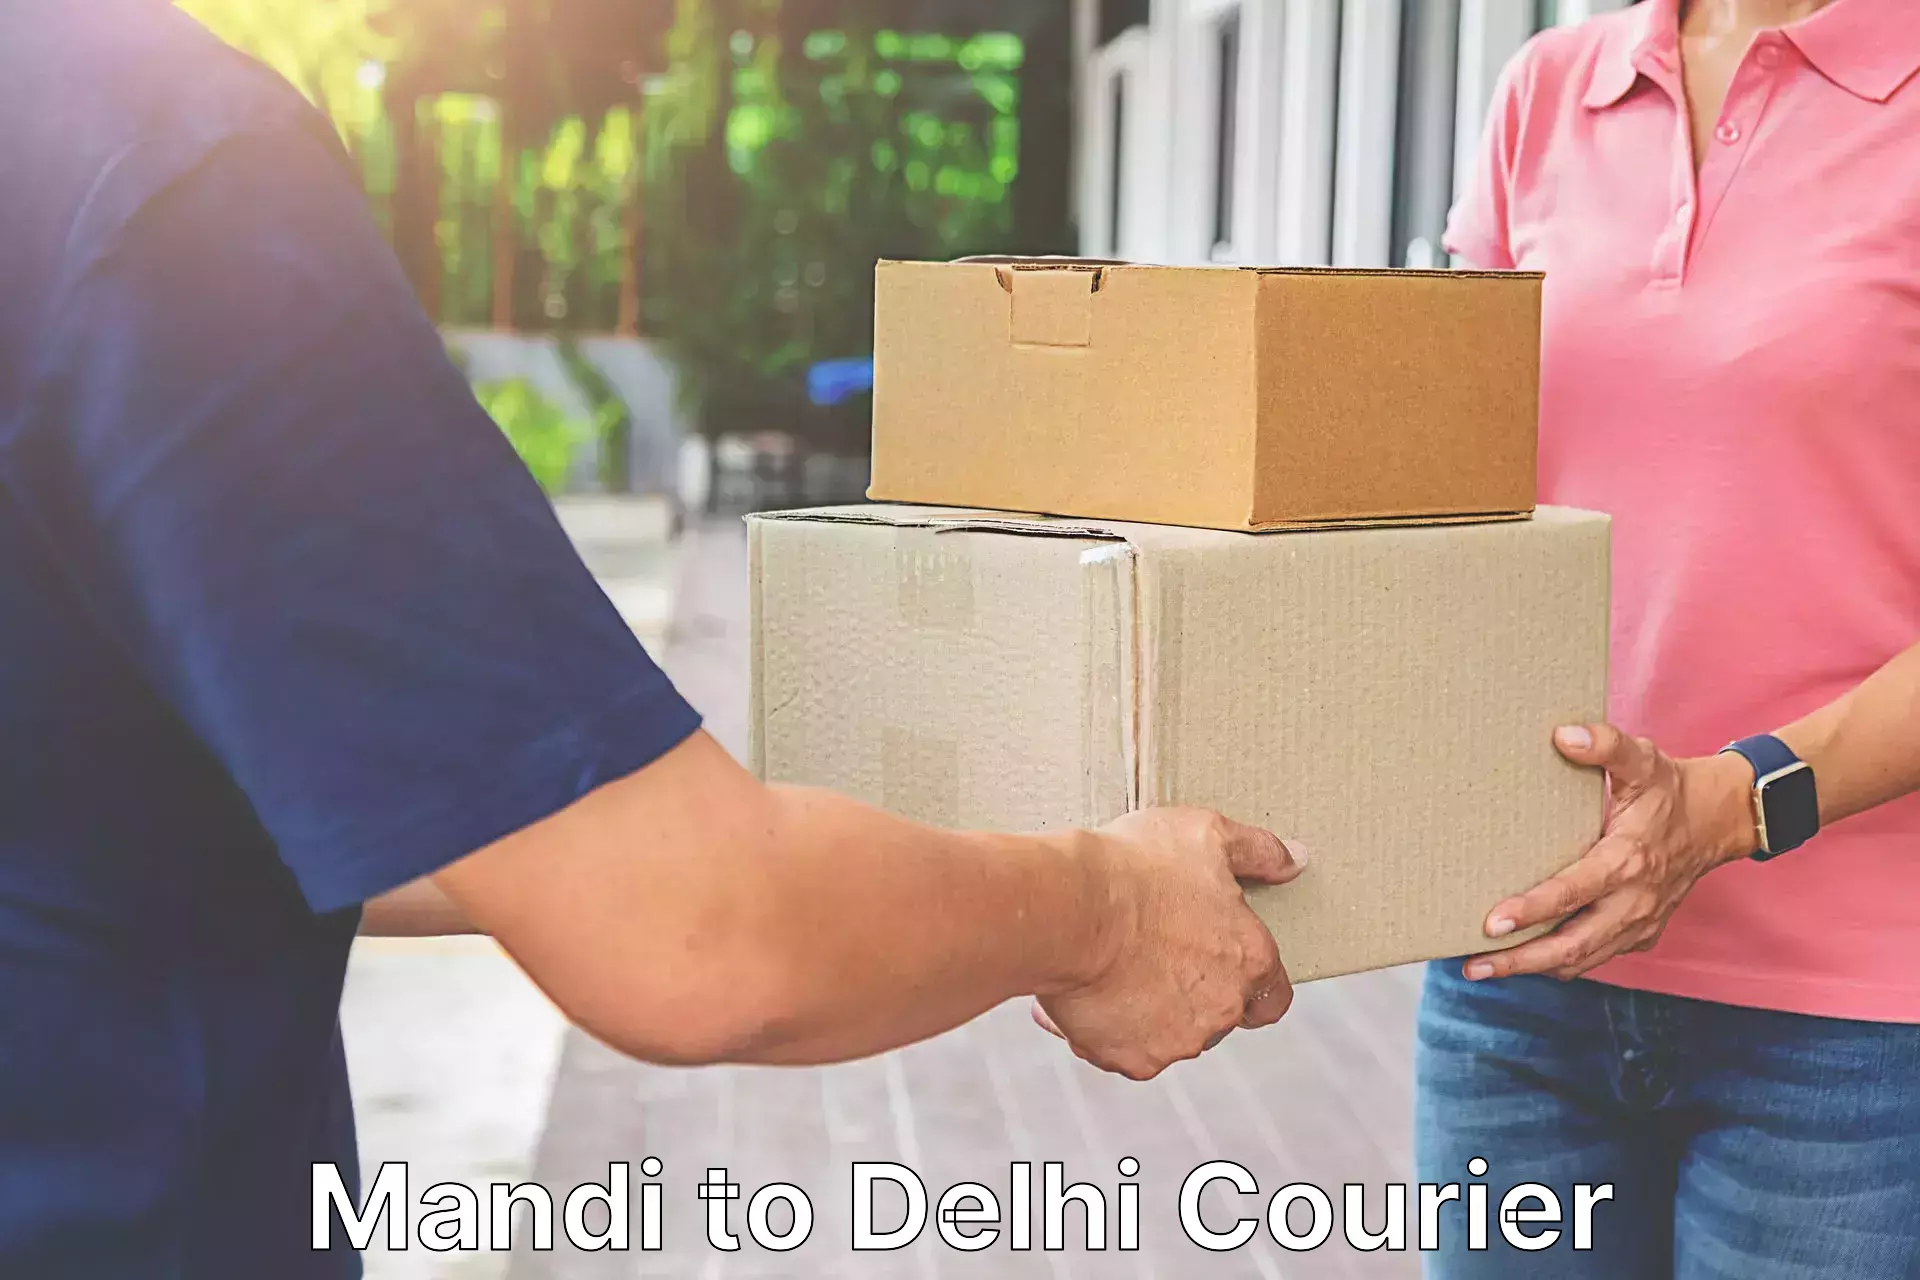 Local delivery service Mandi to Delhi